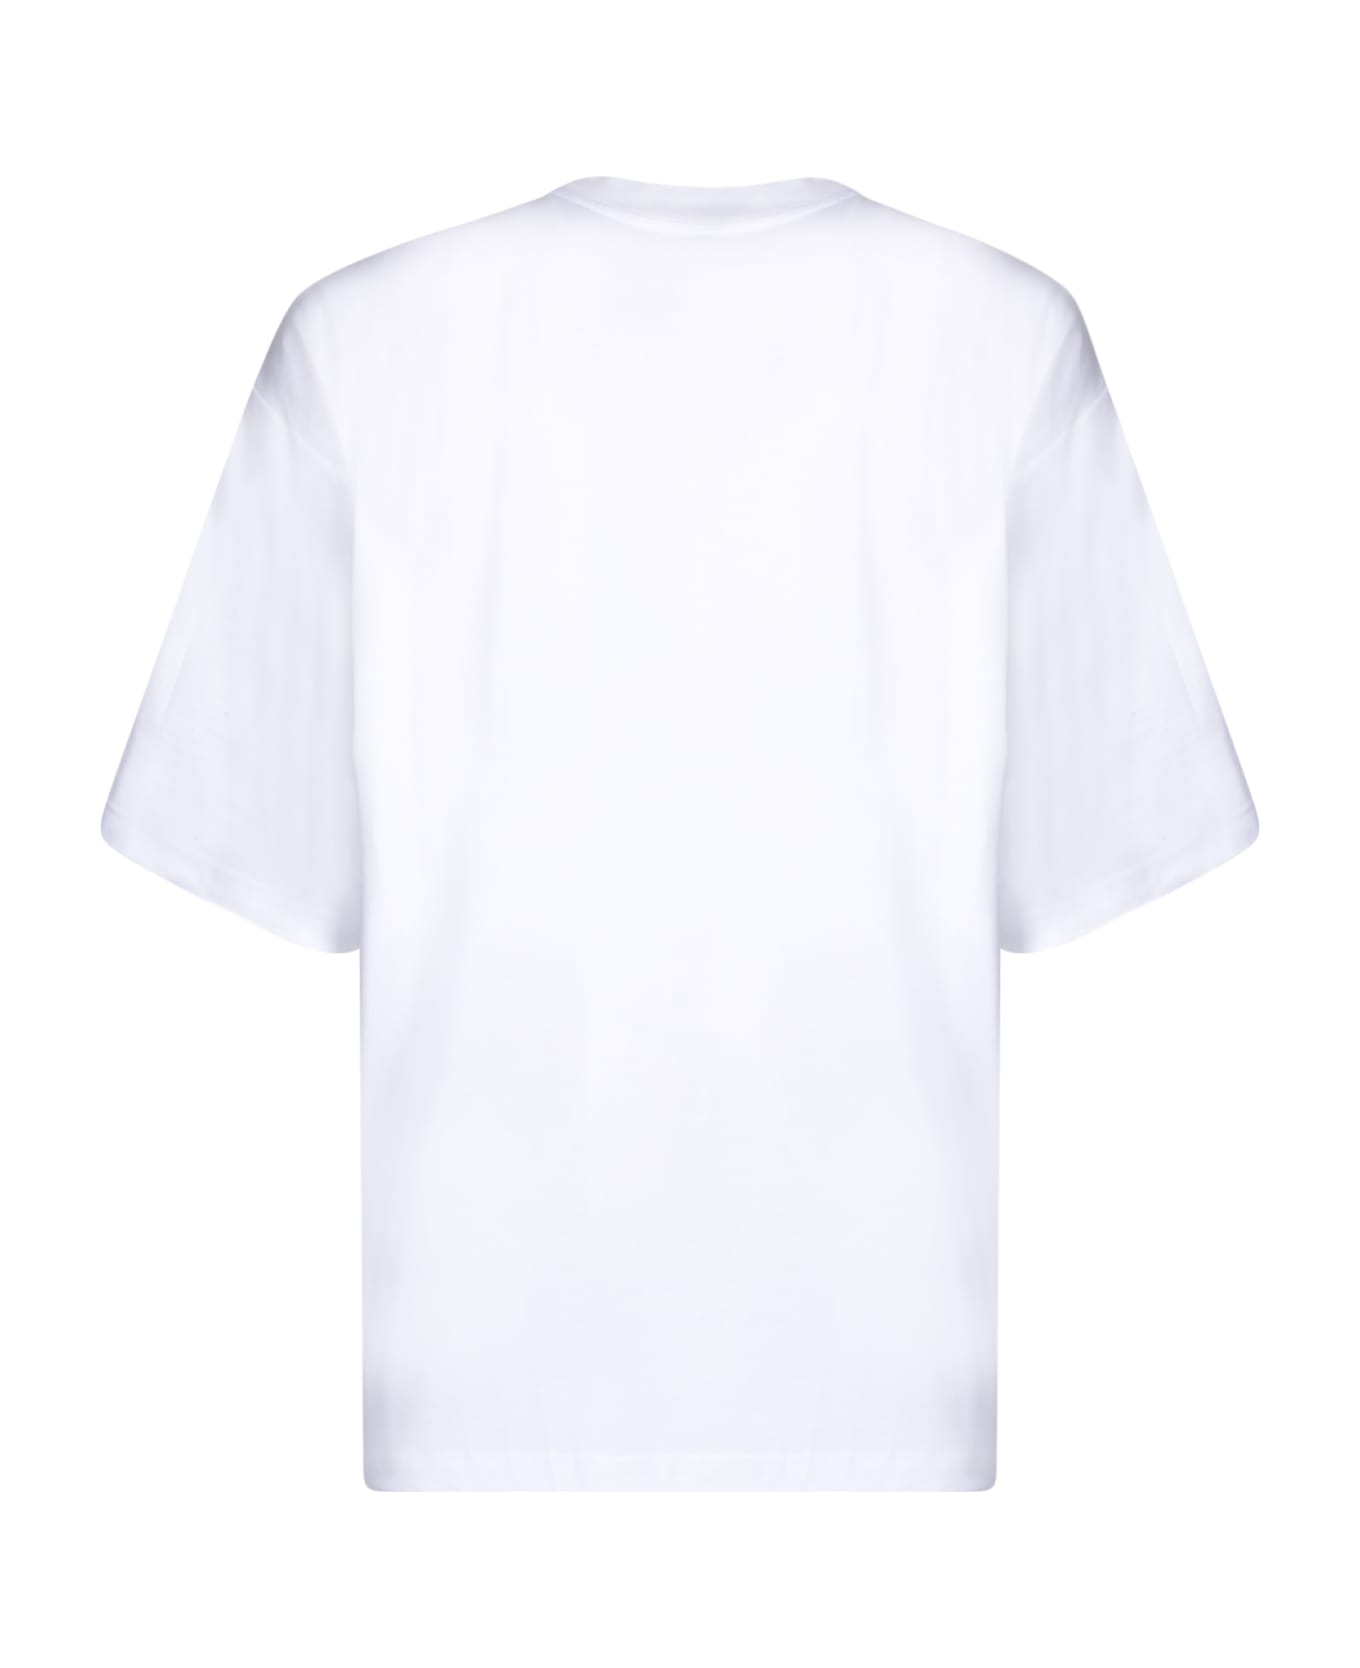 Lanvin T-shirt Curb Lace - White